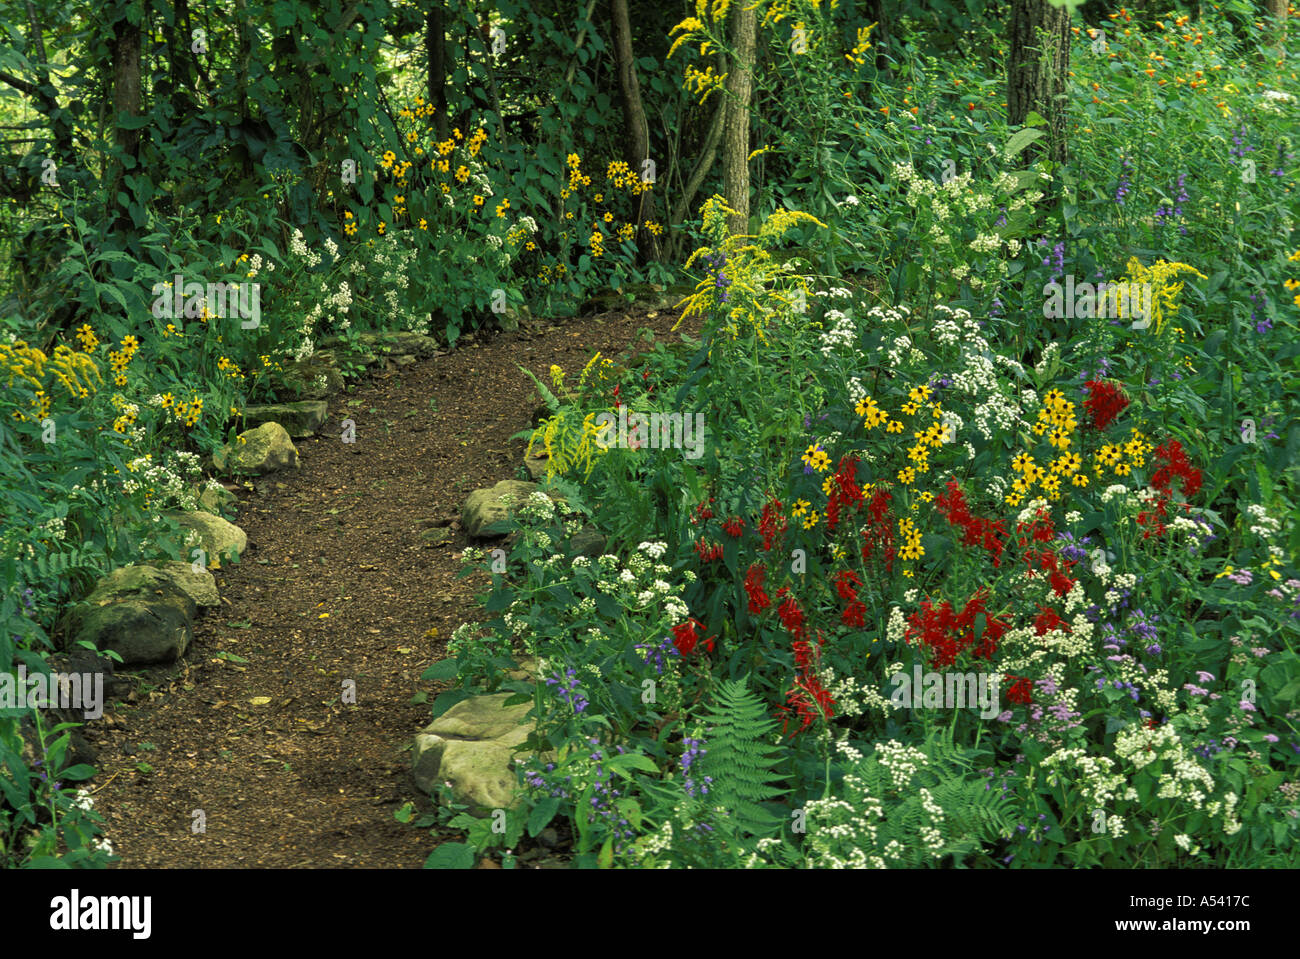 Friedlichen Weg in schattigen einheimischen Wildblumen Garten Midwest USA Stockfoto